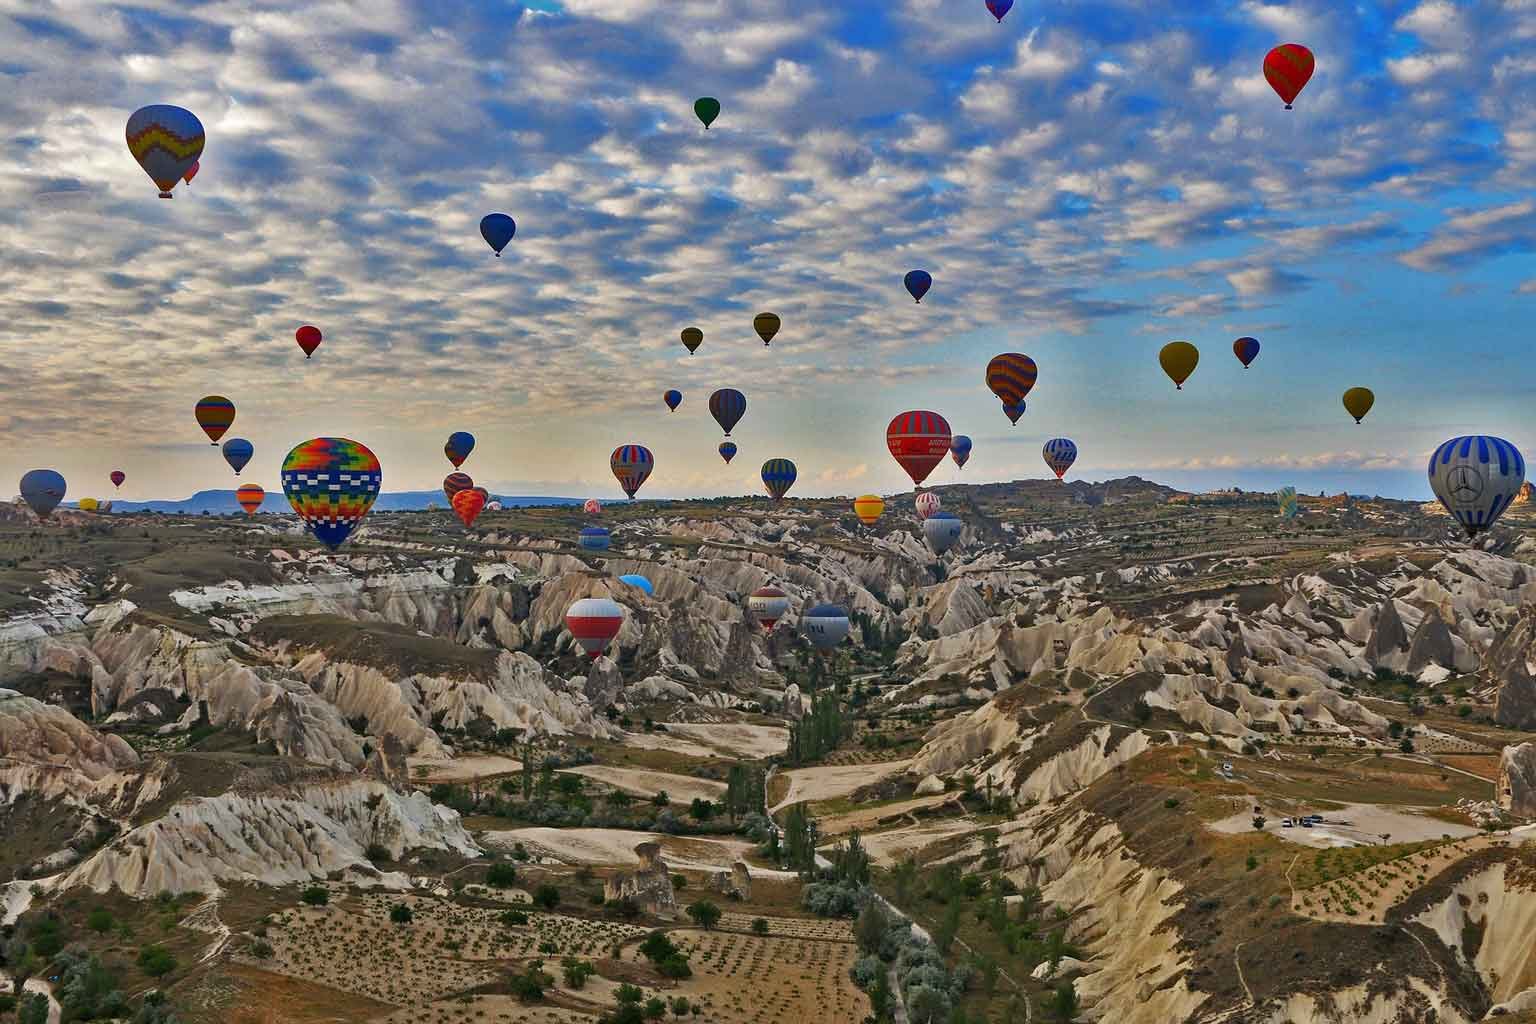 1440x960_Kappadokien_hot-air-balloon